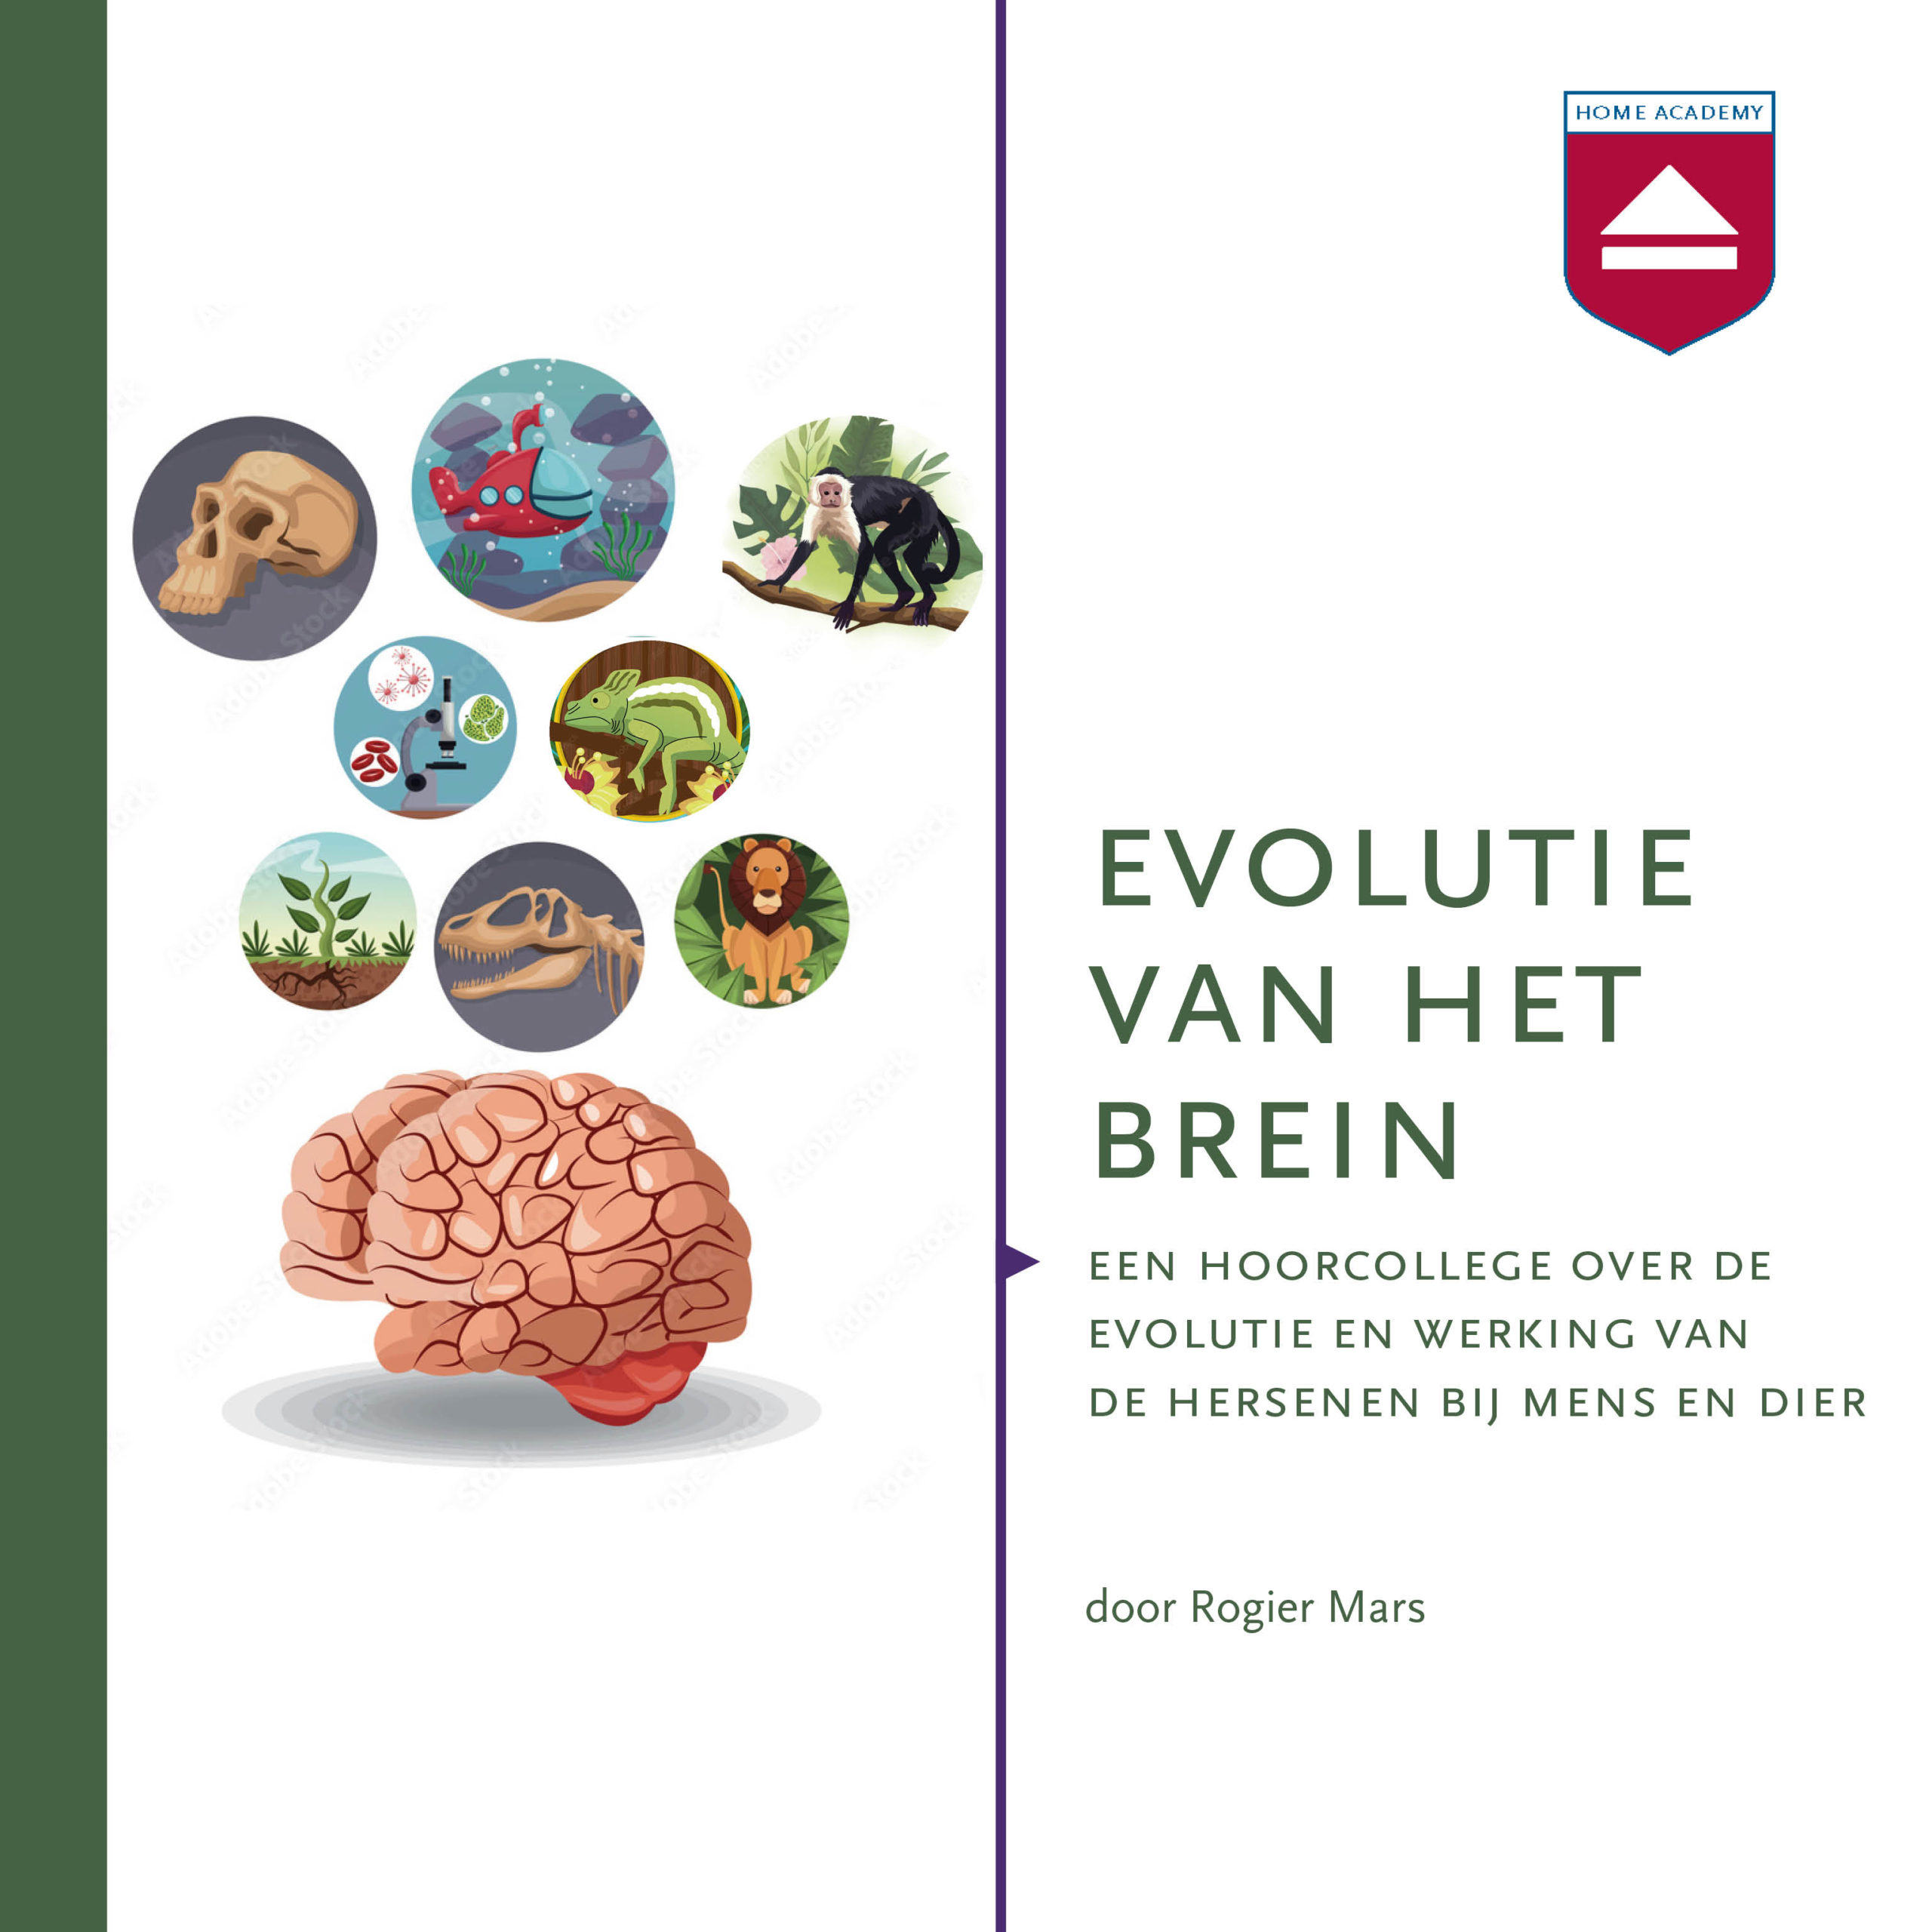 Evolutie van het brein hoorcollege